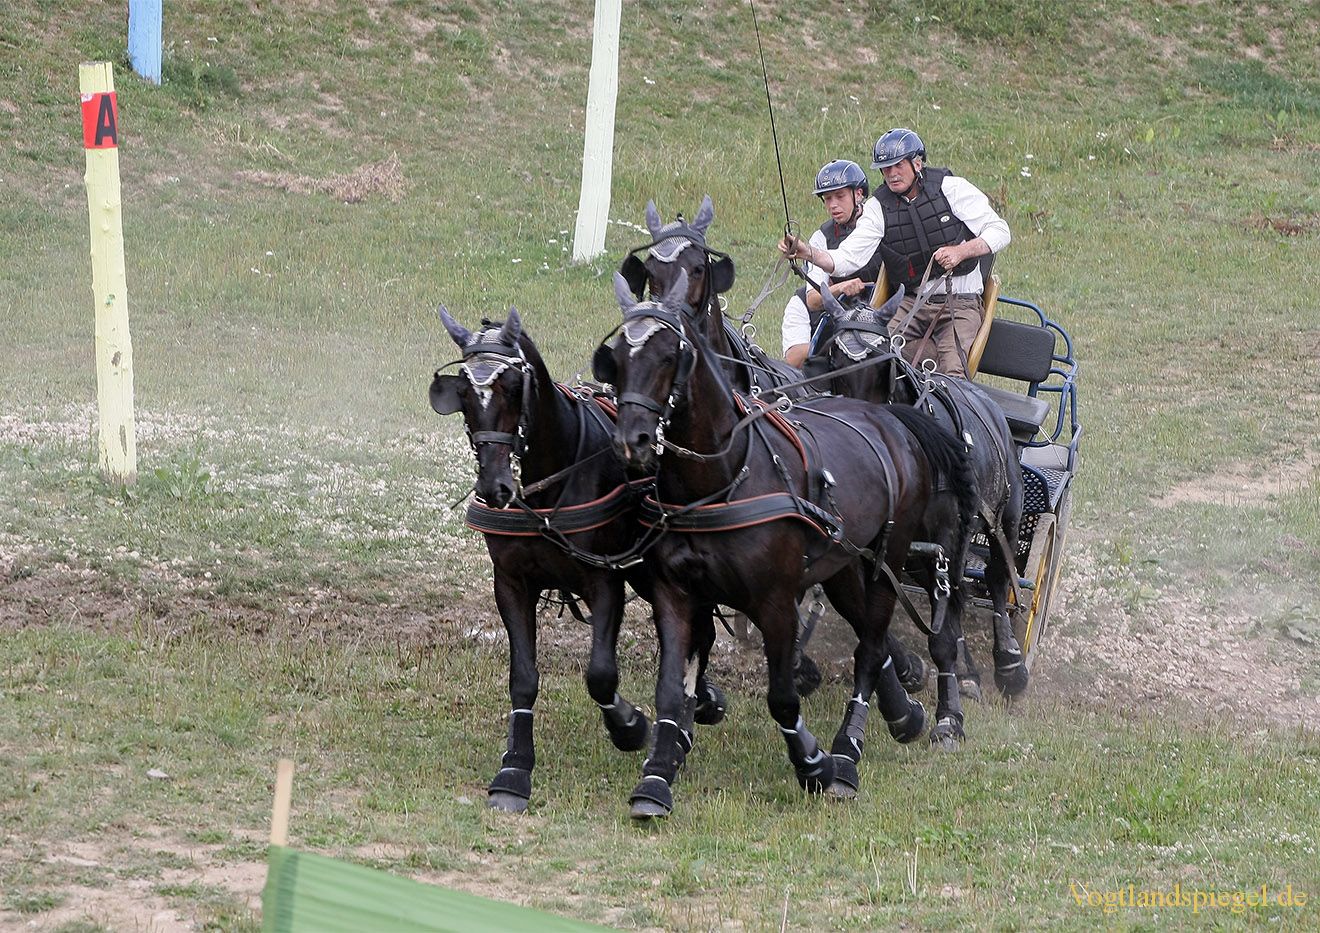 RFV Mohlsdorf e.V. rief Pferdesportfreunde zum Championat